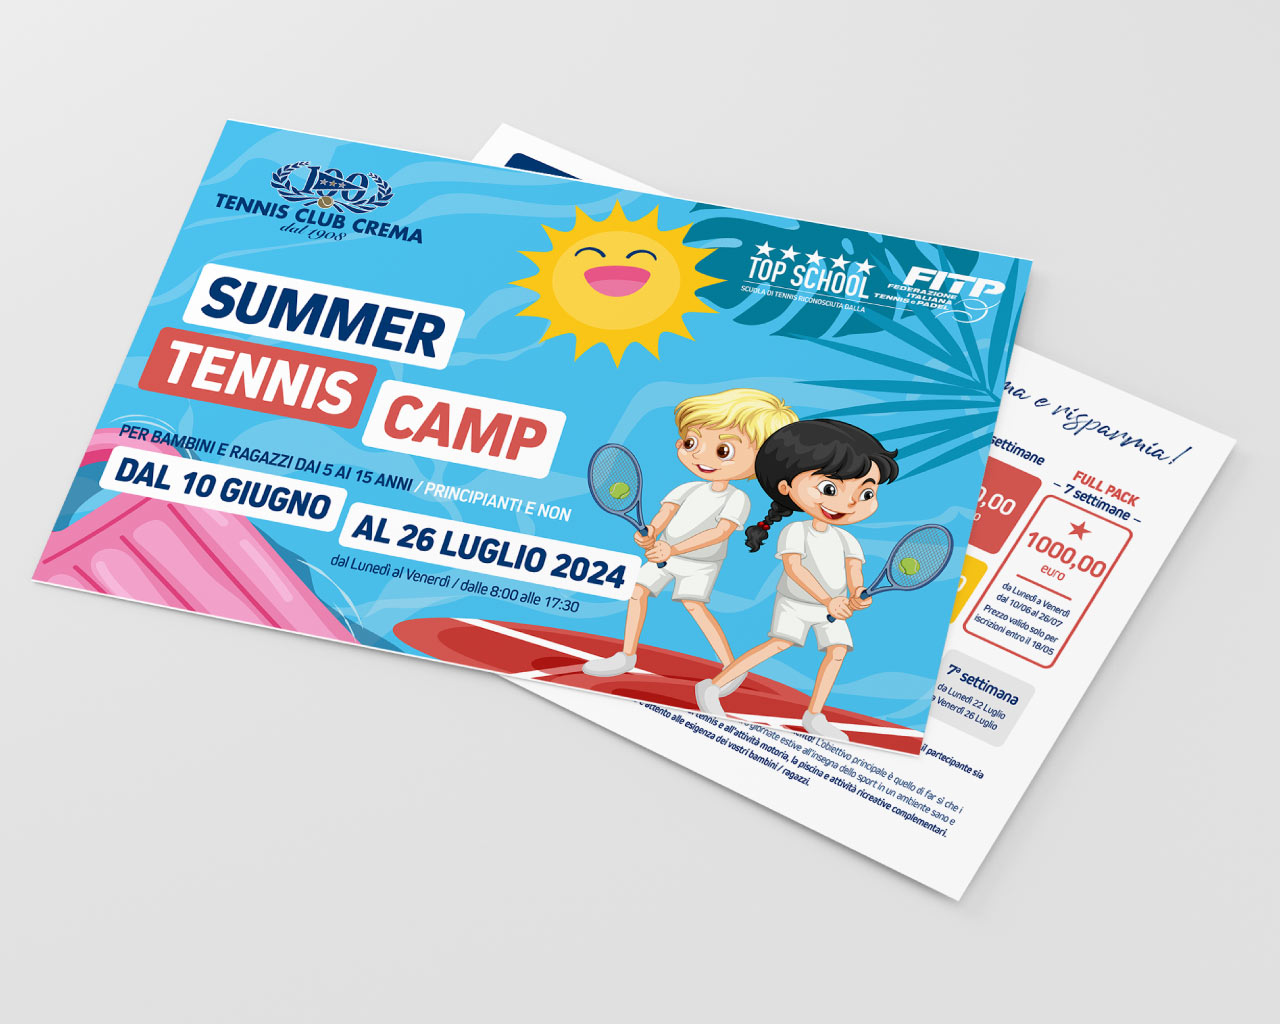 Tennis Club Crema - Summer camp 2024